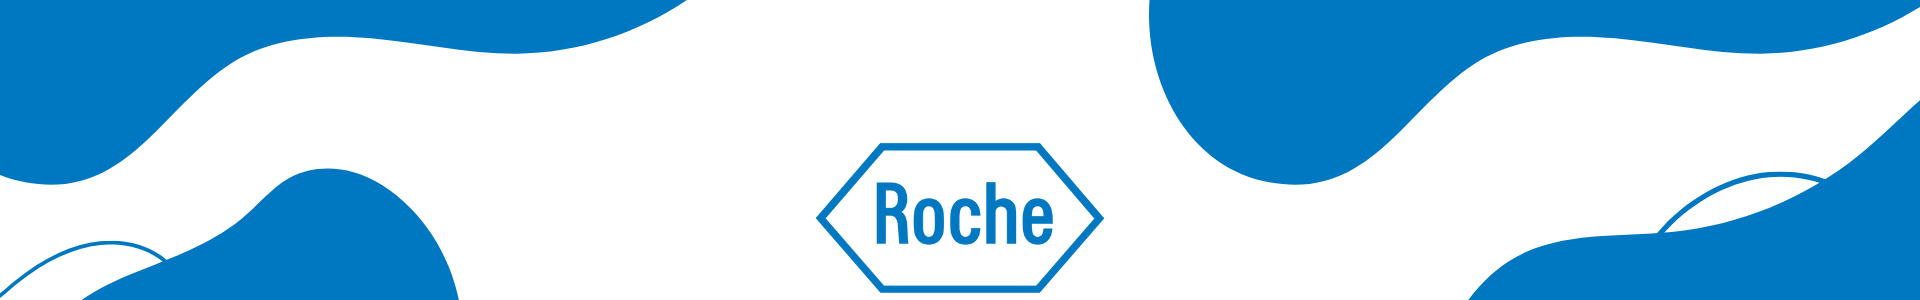 Marca Roche 